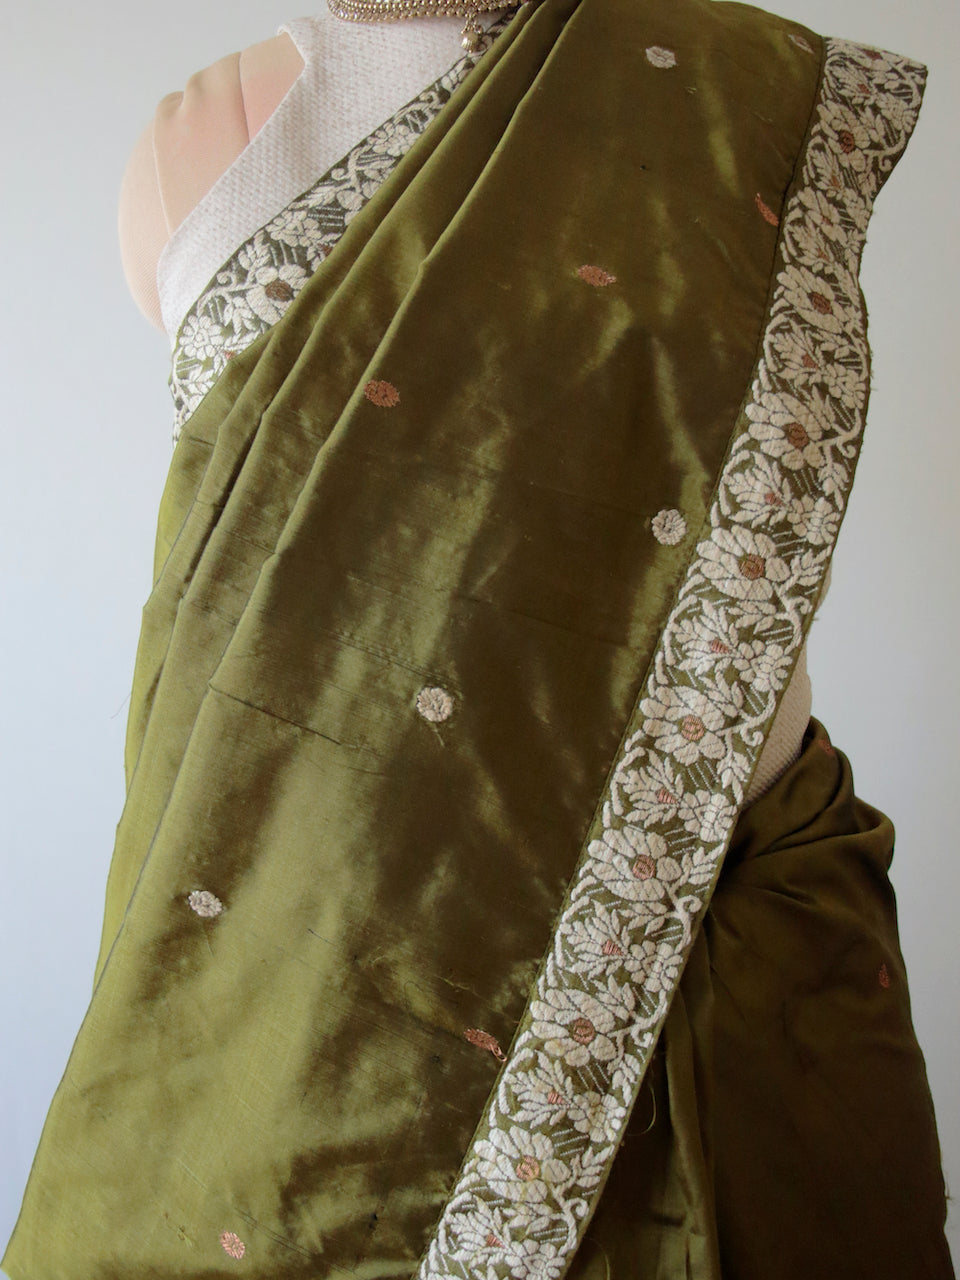 Mehendi Green Colour Handloom Mulberry Silk Saree from Assam